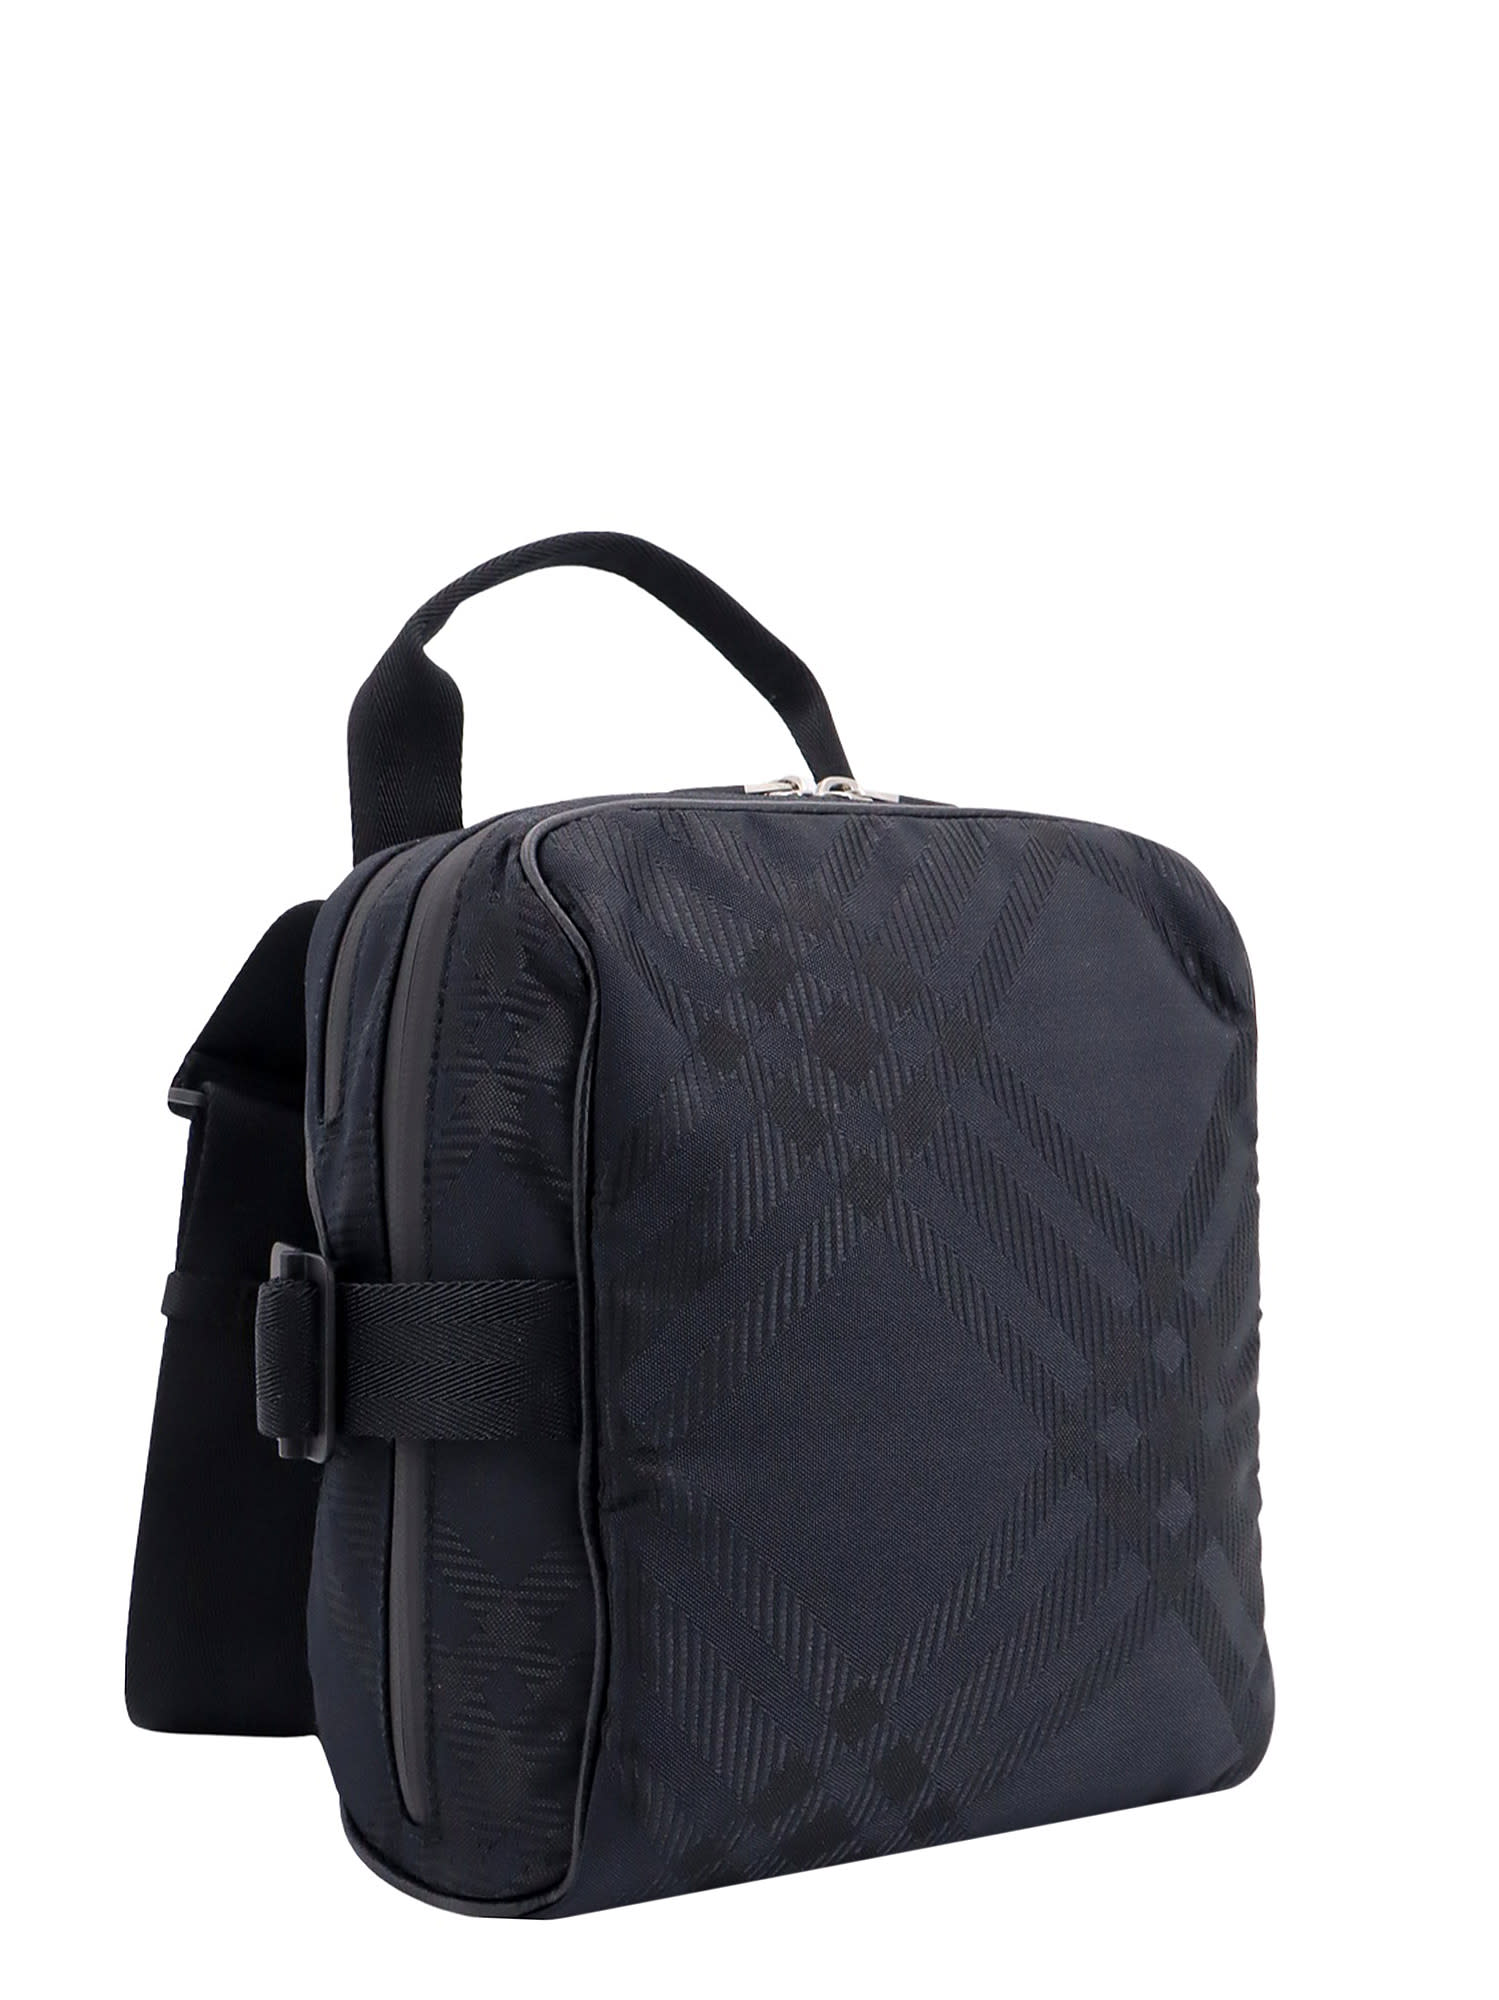 Shop Burberry Check Shoulder Bag In Black